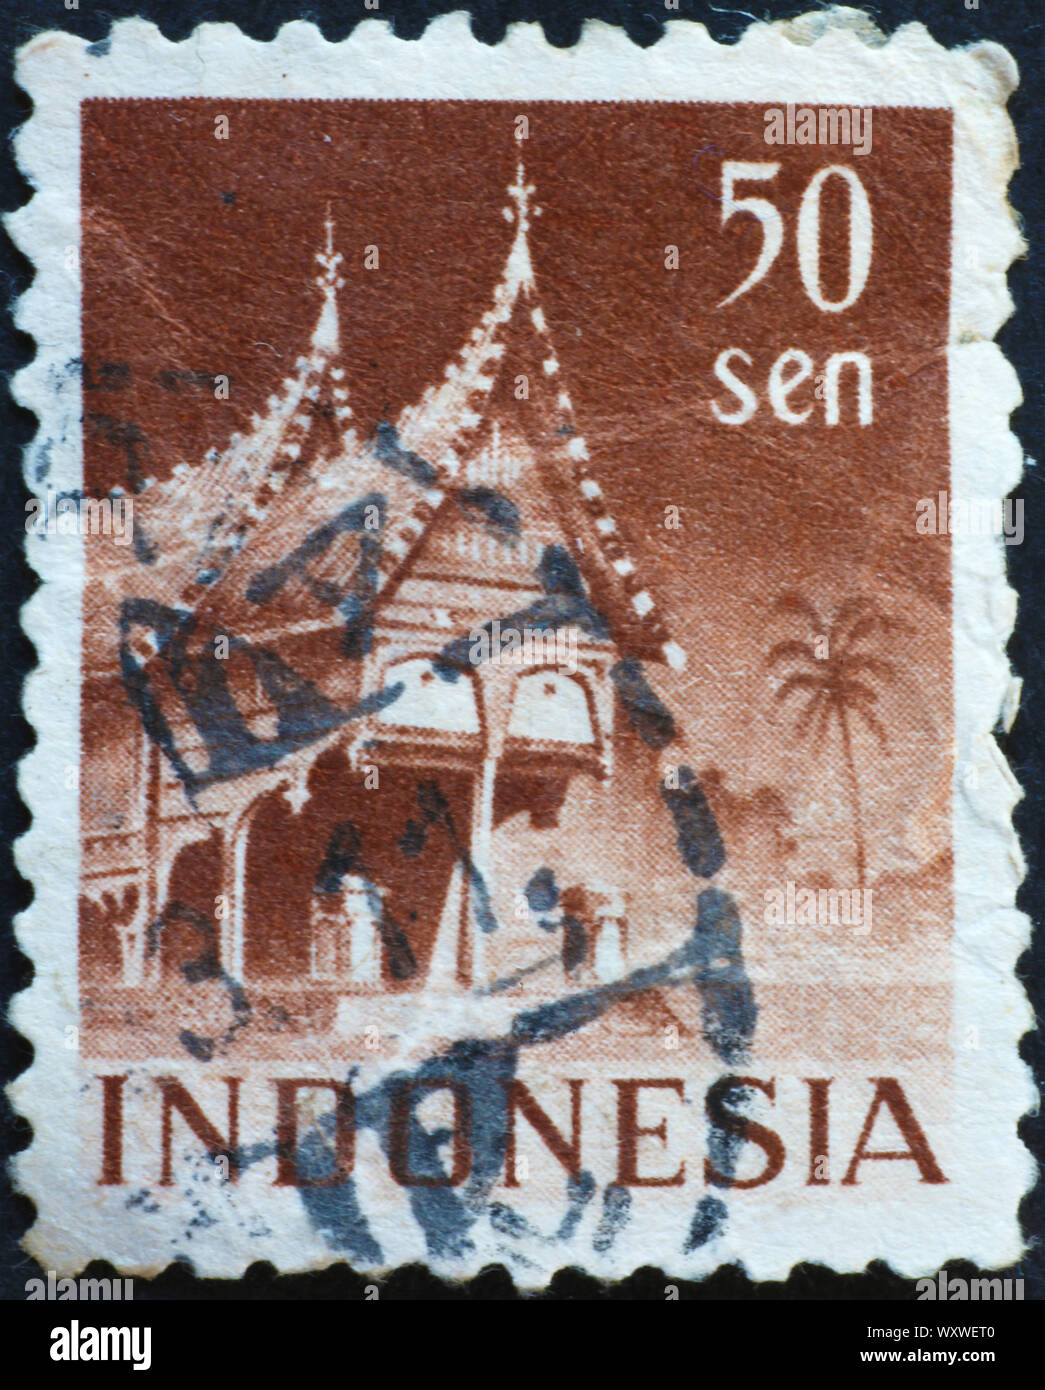 Casa de madera tradicional de Indonesia sobre la estampilla postal Foto de stock